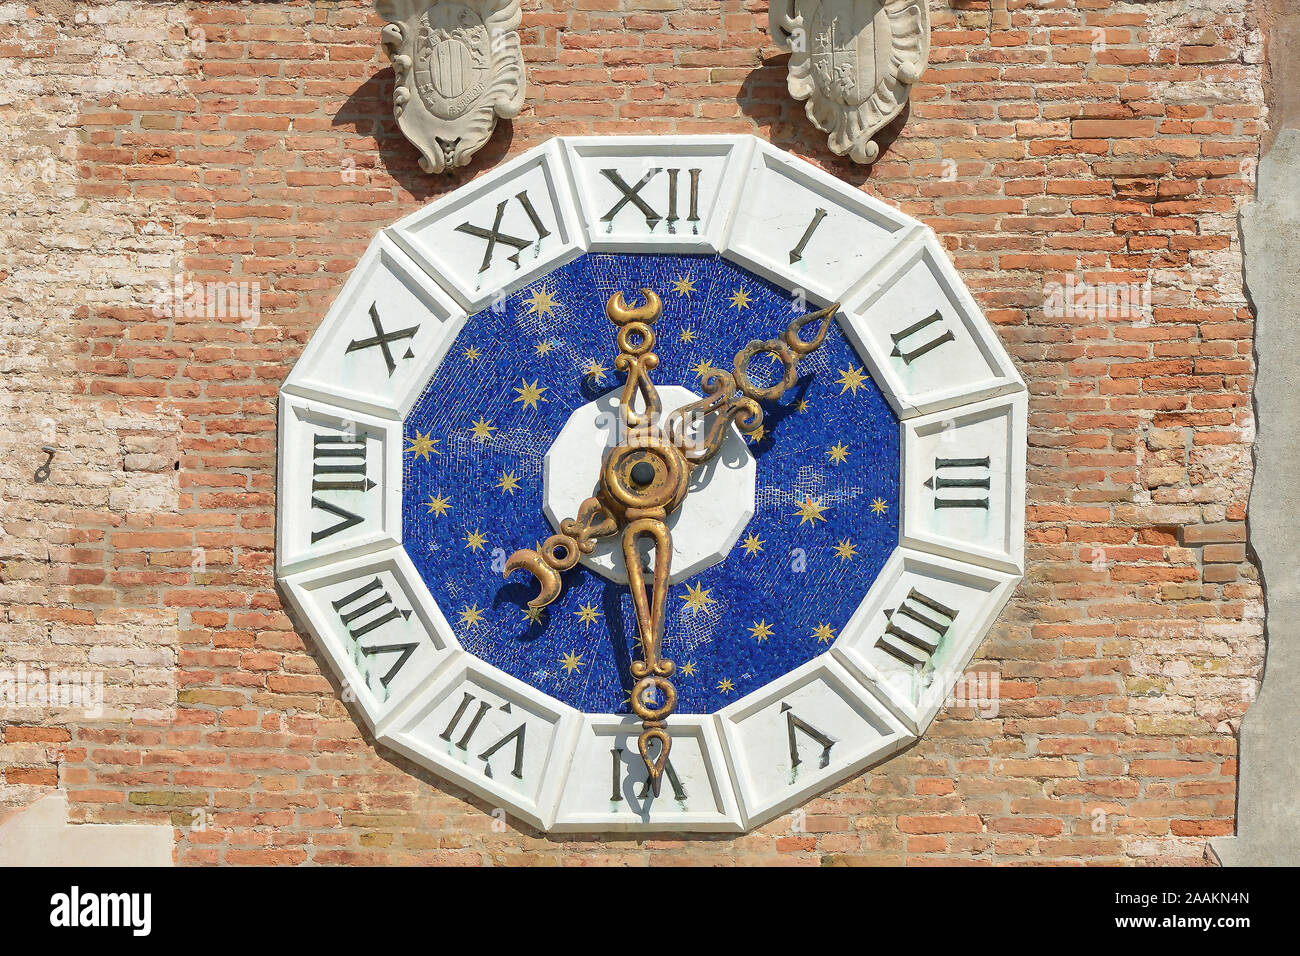 Tour de l'horloge à l'entrée de l'Arsenal de Venise historique et Musée Naval de quartier Castello de Venise - Italie. Banque D'Images